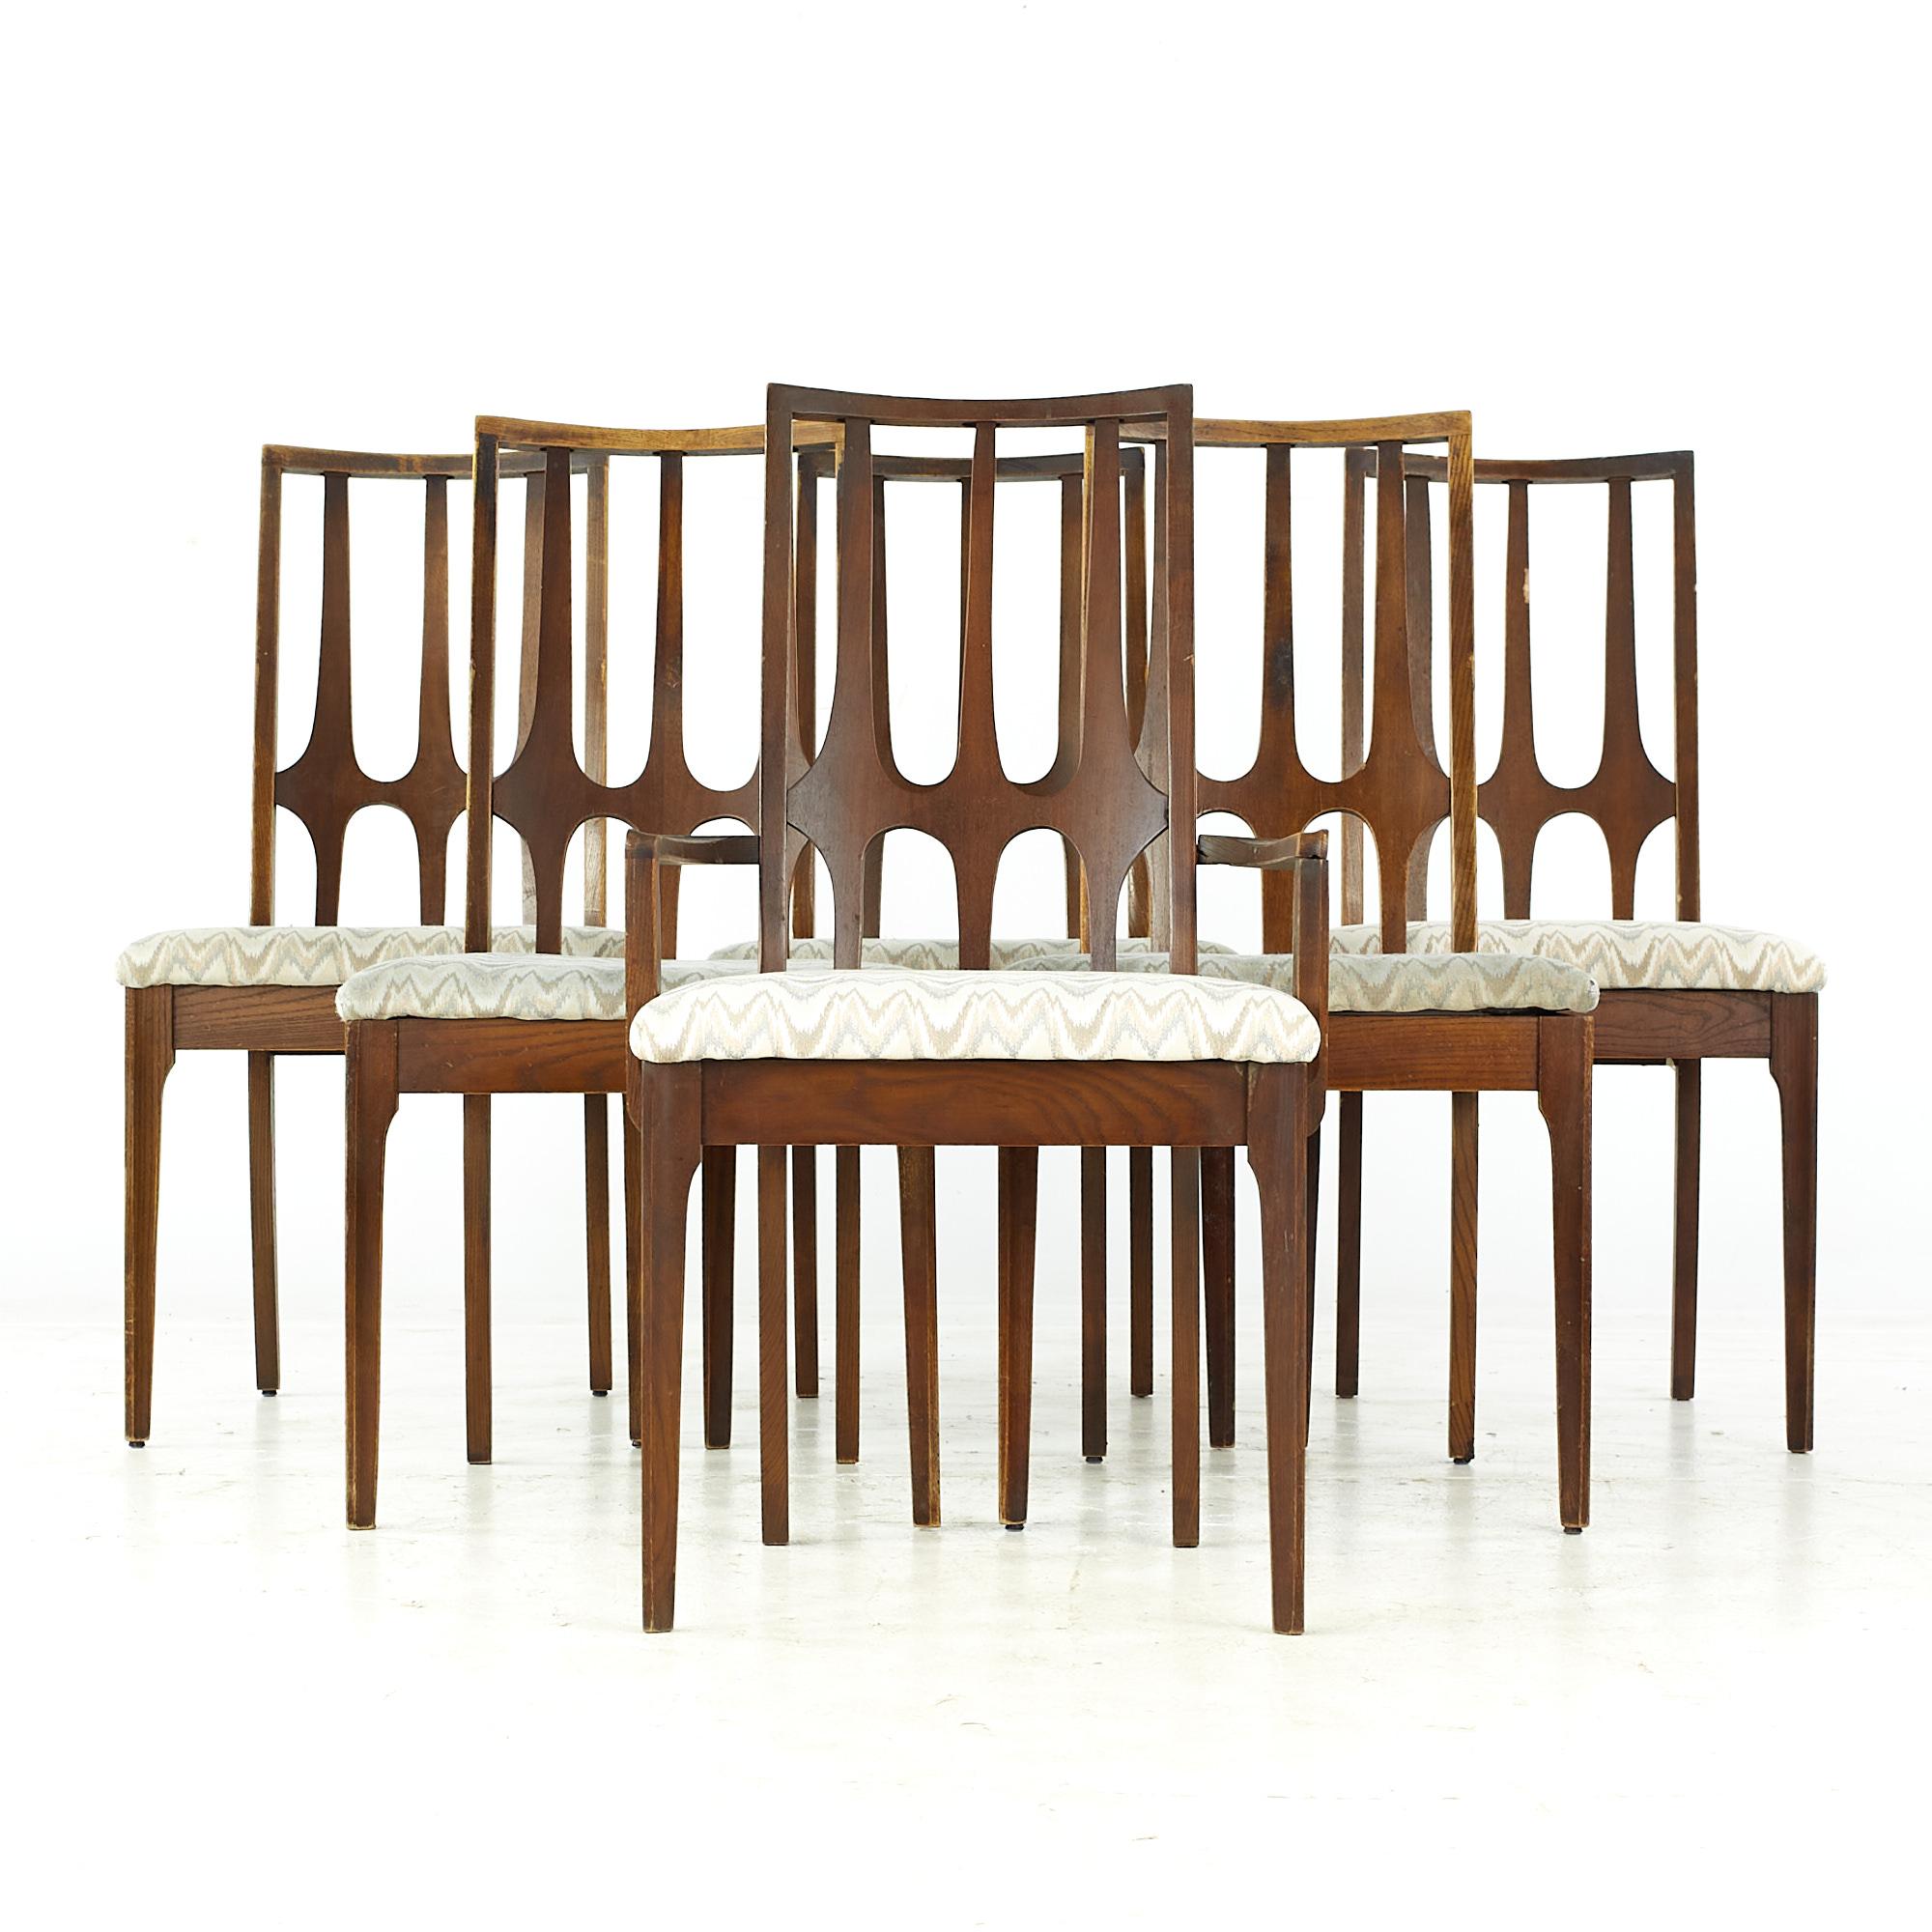 Broyhill Brasilia chaises de salle à manger en noyer du milieu du siècle - ensemble de 6

Chaque fauteuil sans bras mesure : 20.5 largeur x 21 profondeur x 38 hauteur, avec une hauteur d'assise de 19 pouces.
Chaque chaise de capitaine mesure :